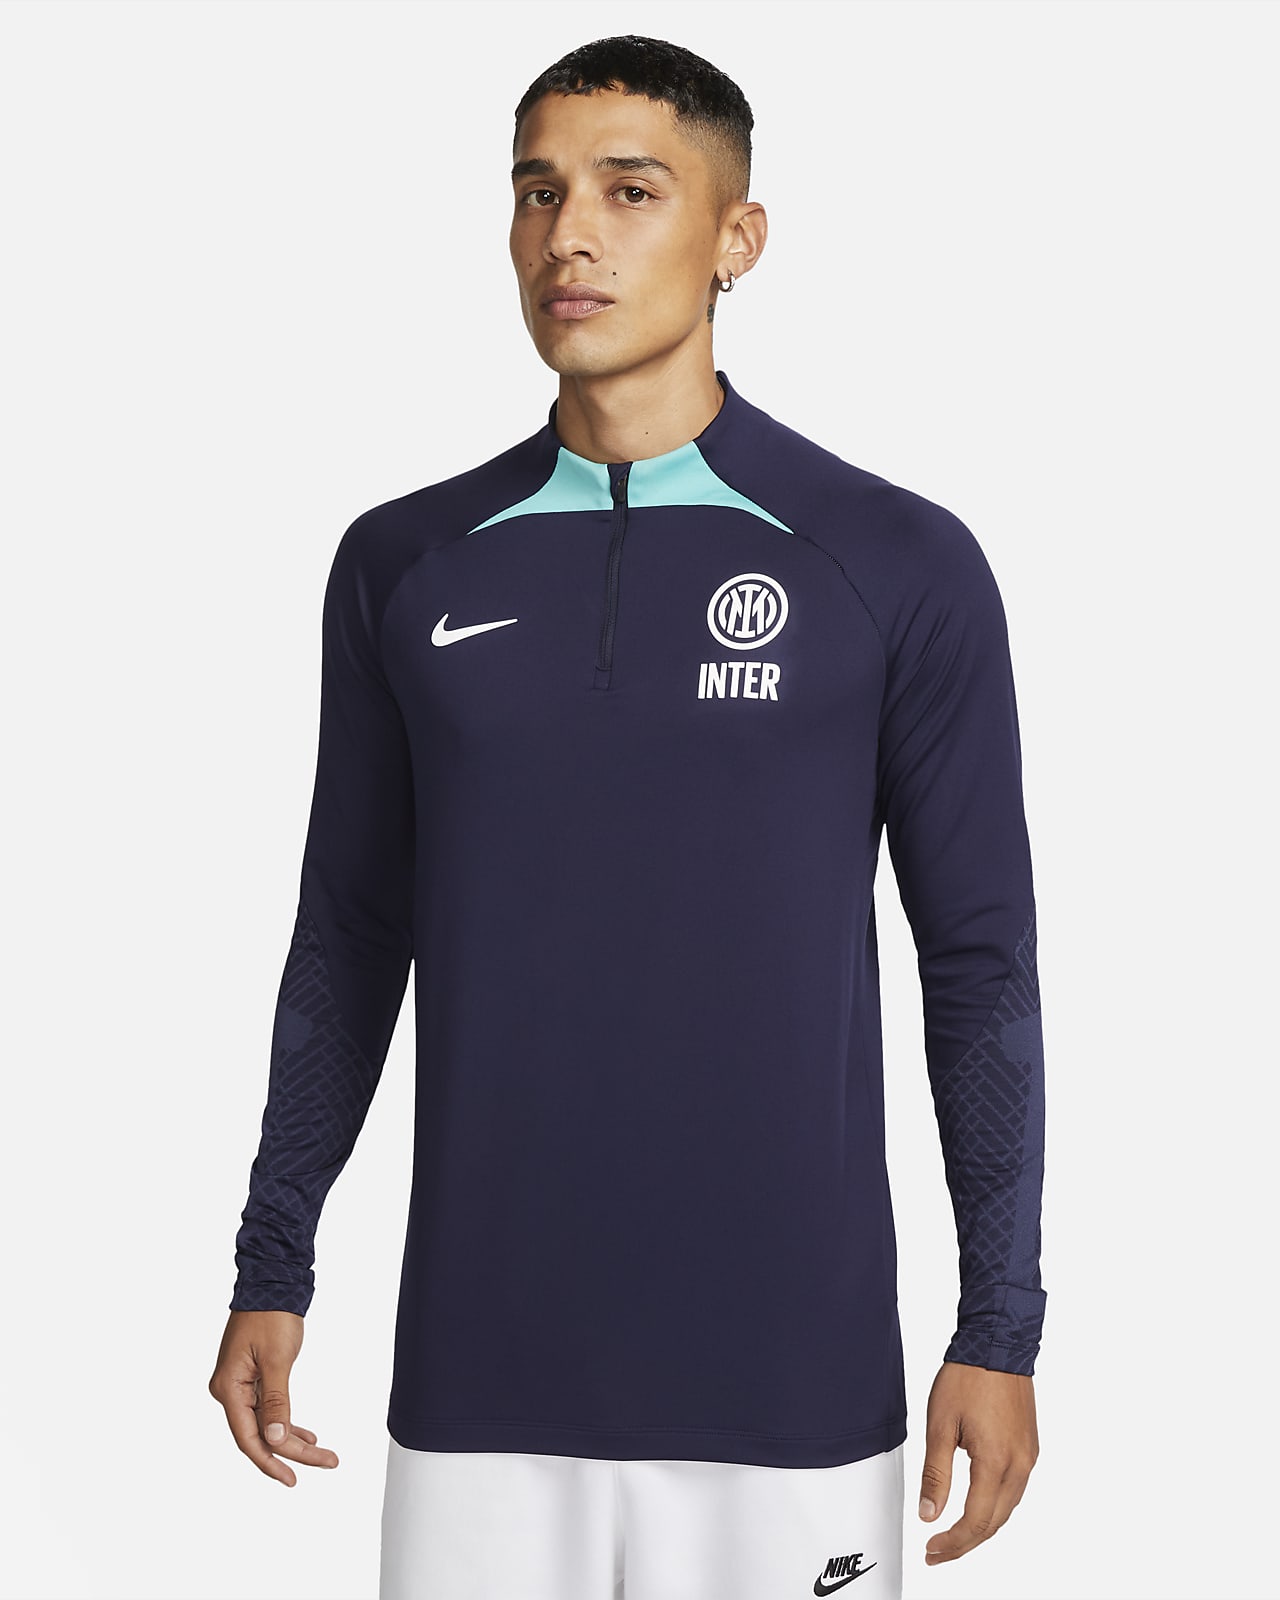 Strike Inter de Milán Camiseta de entrenamiento de fútbol Dri-FIT - Hombre. Nike